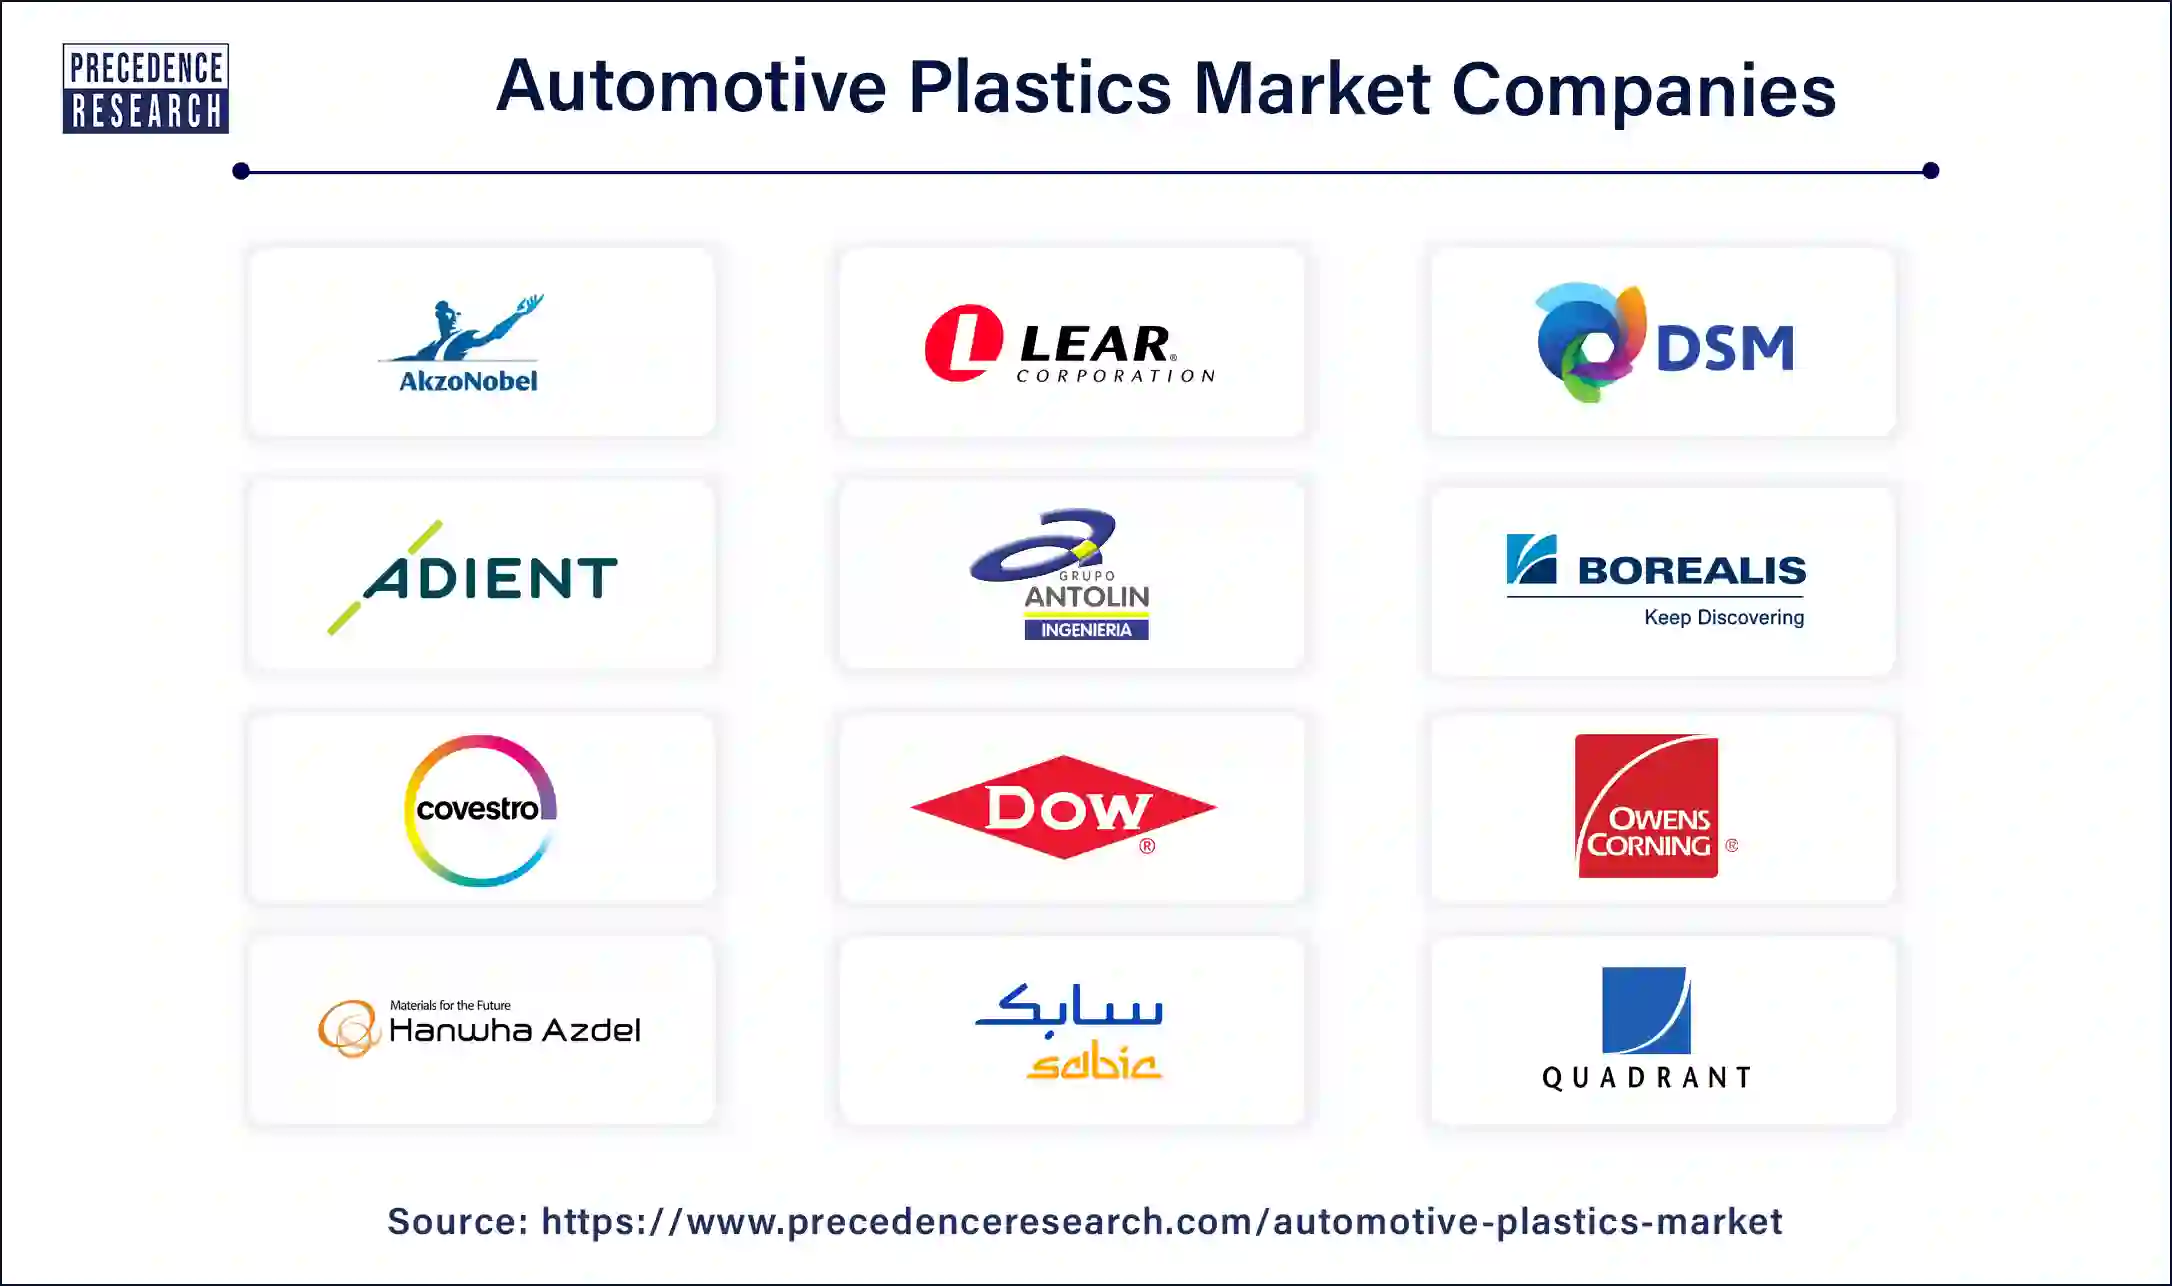 Automotive Plastics Companies